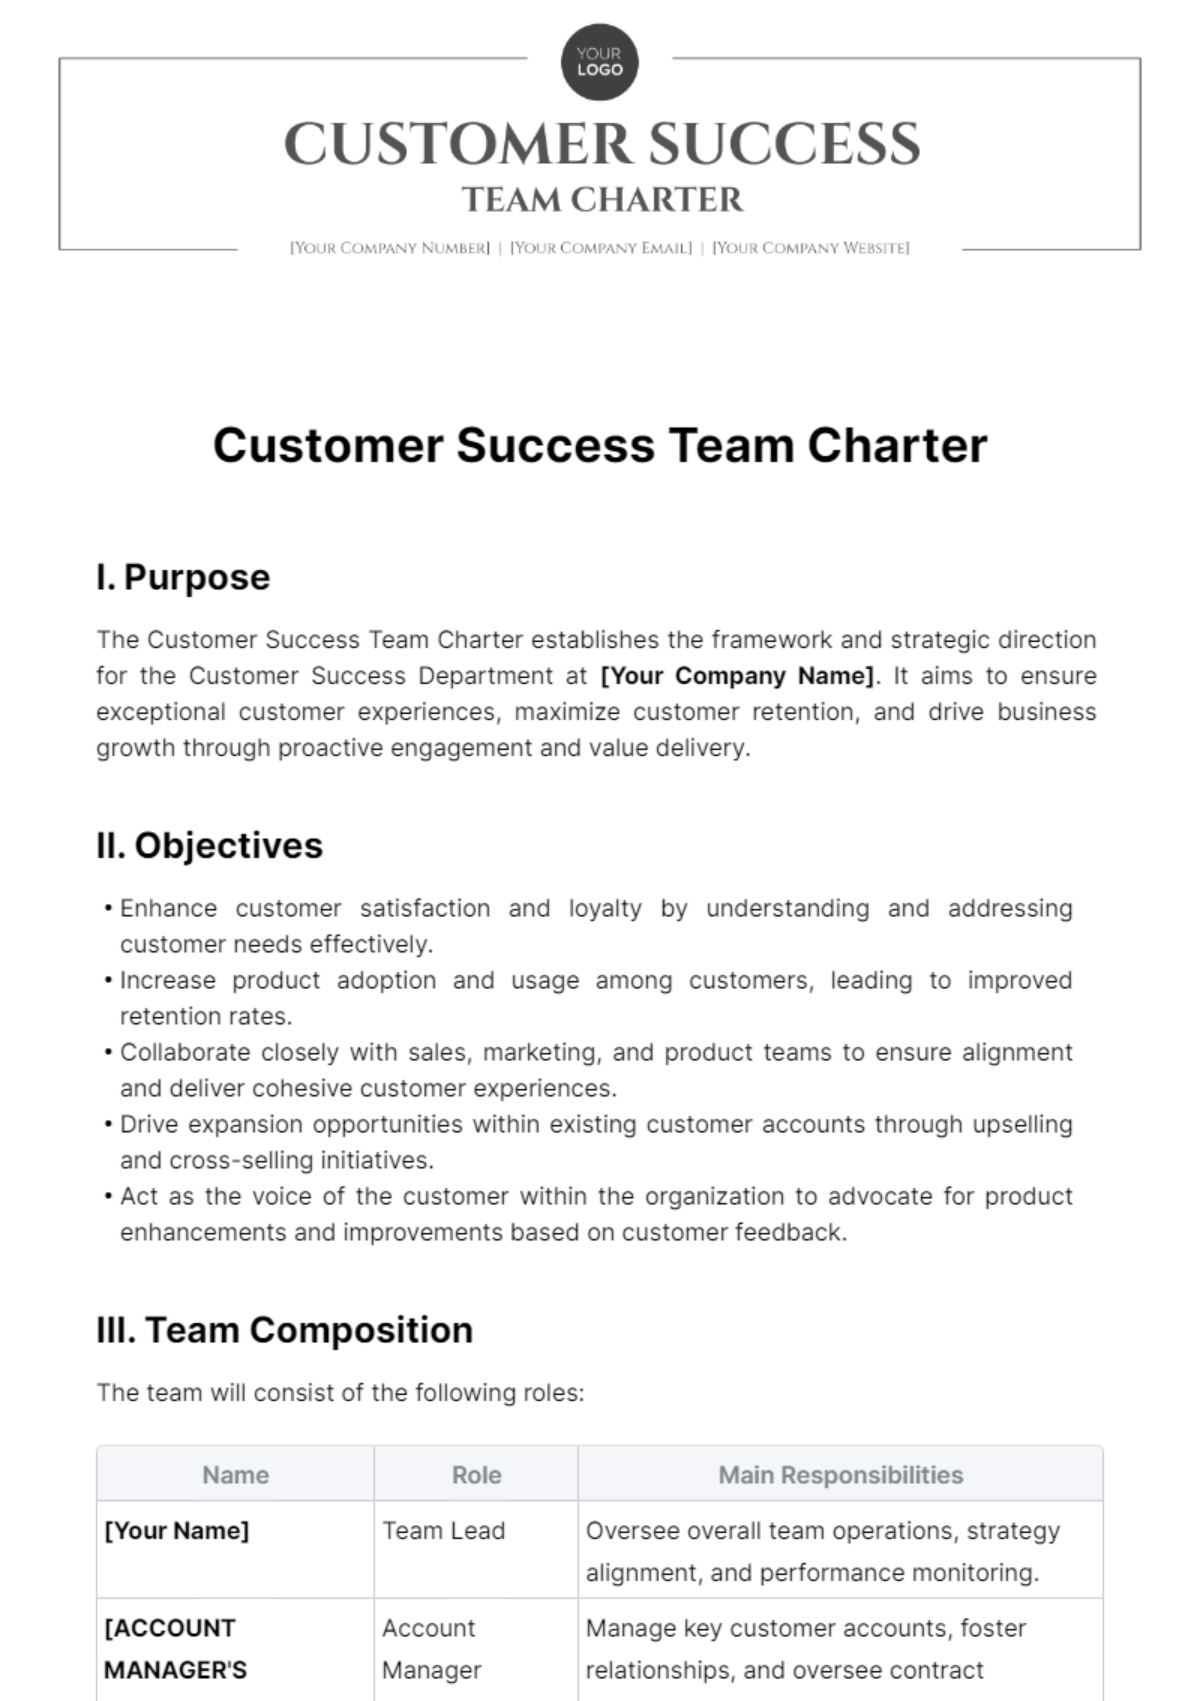 Customer Success Team Charter Template